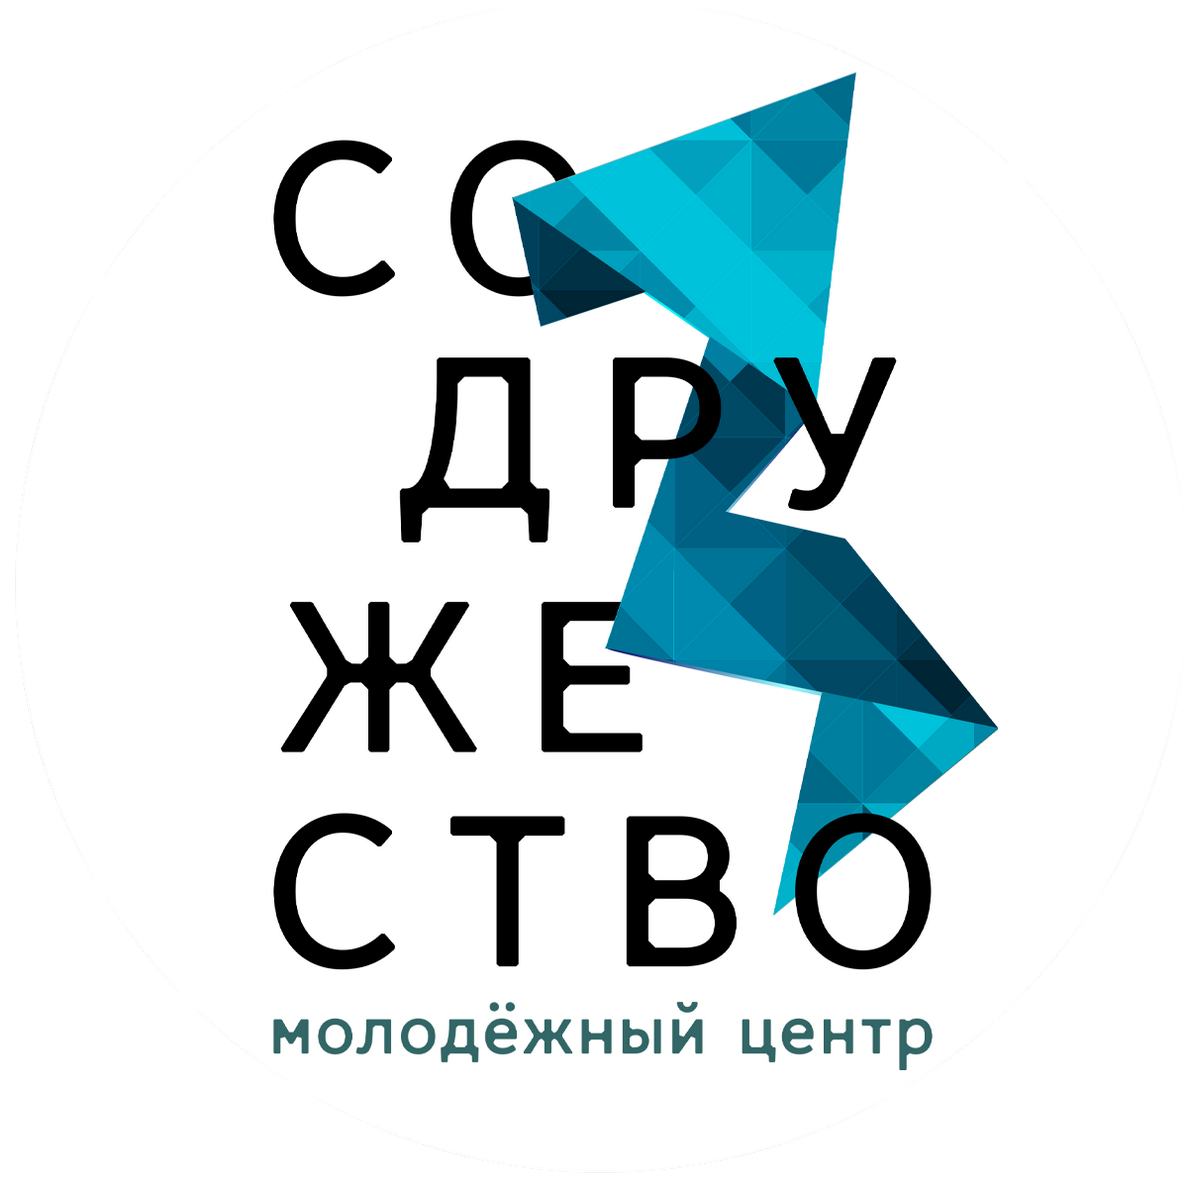 Молодежный центр новосибирск. Молодёжный центр Содружество Новосибирск. Молодежный центр. Молодежный центр логотип. Содружество логотип.